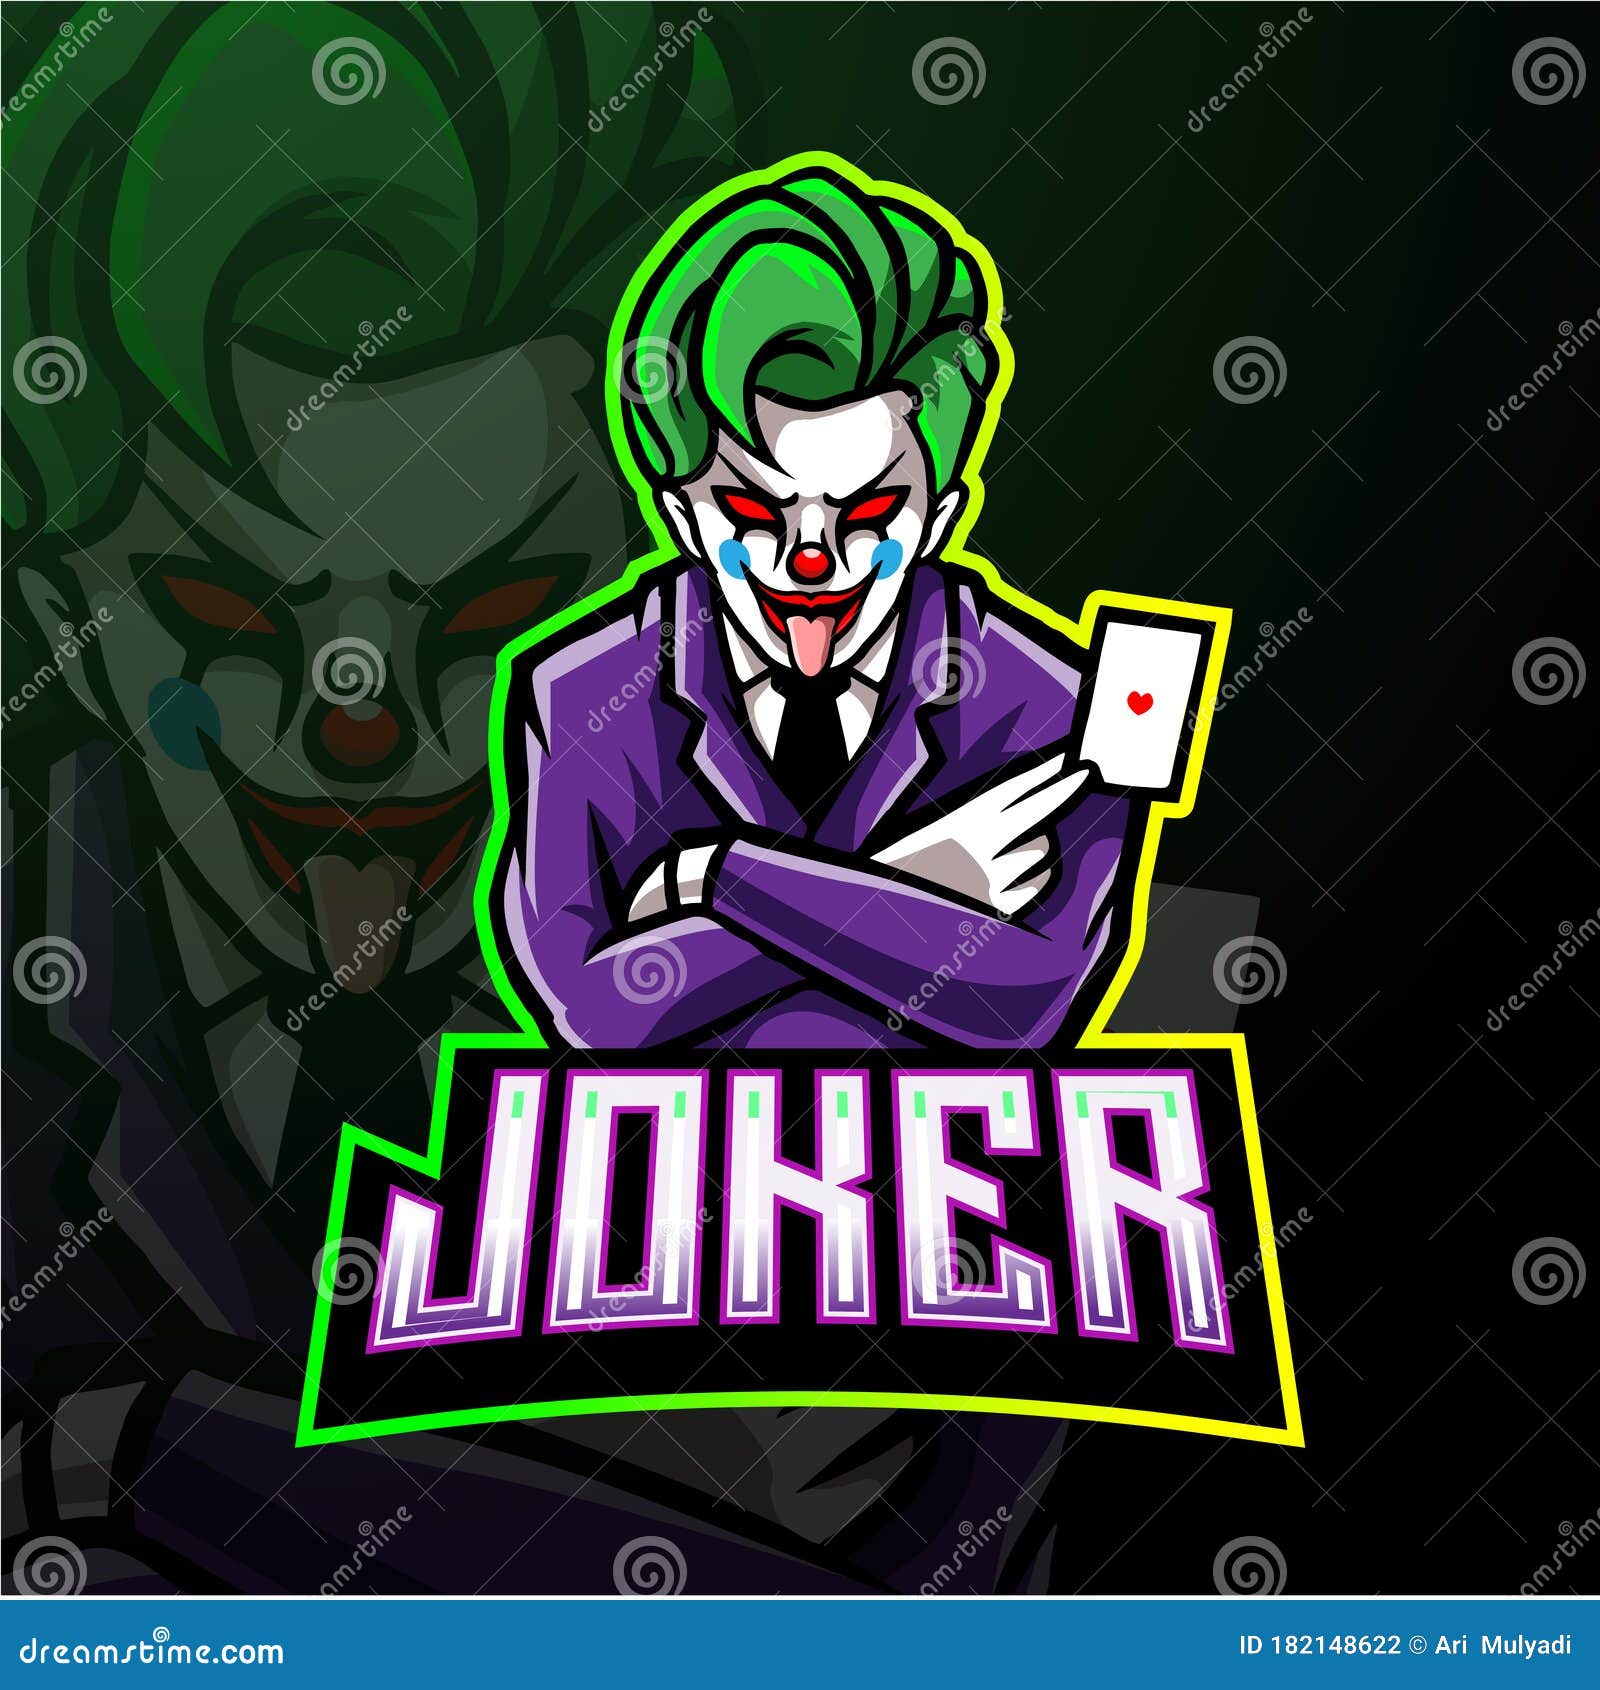 Joker Ilustraciones Stock, Vectores, Y Clipart – (915 Ilustraciones Stock)